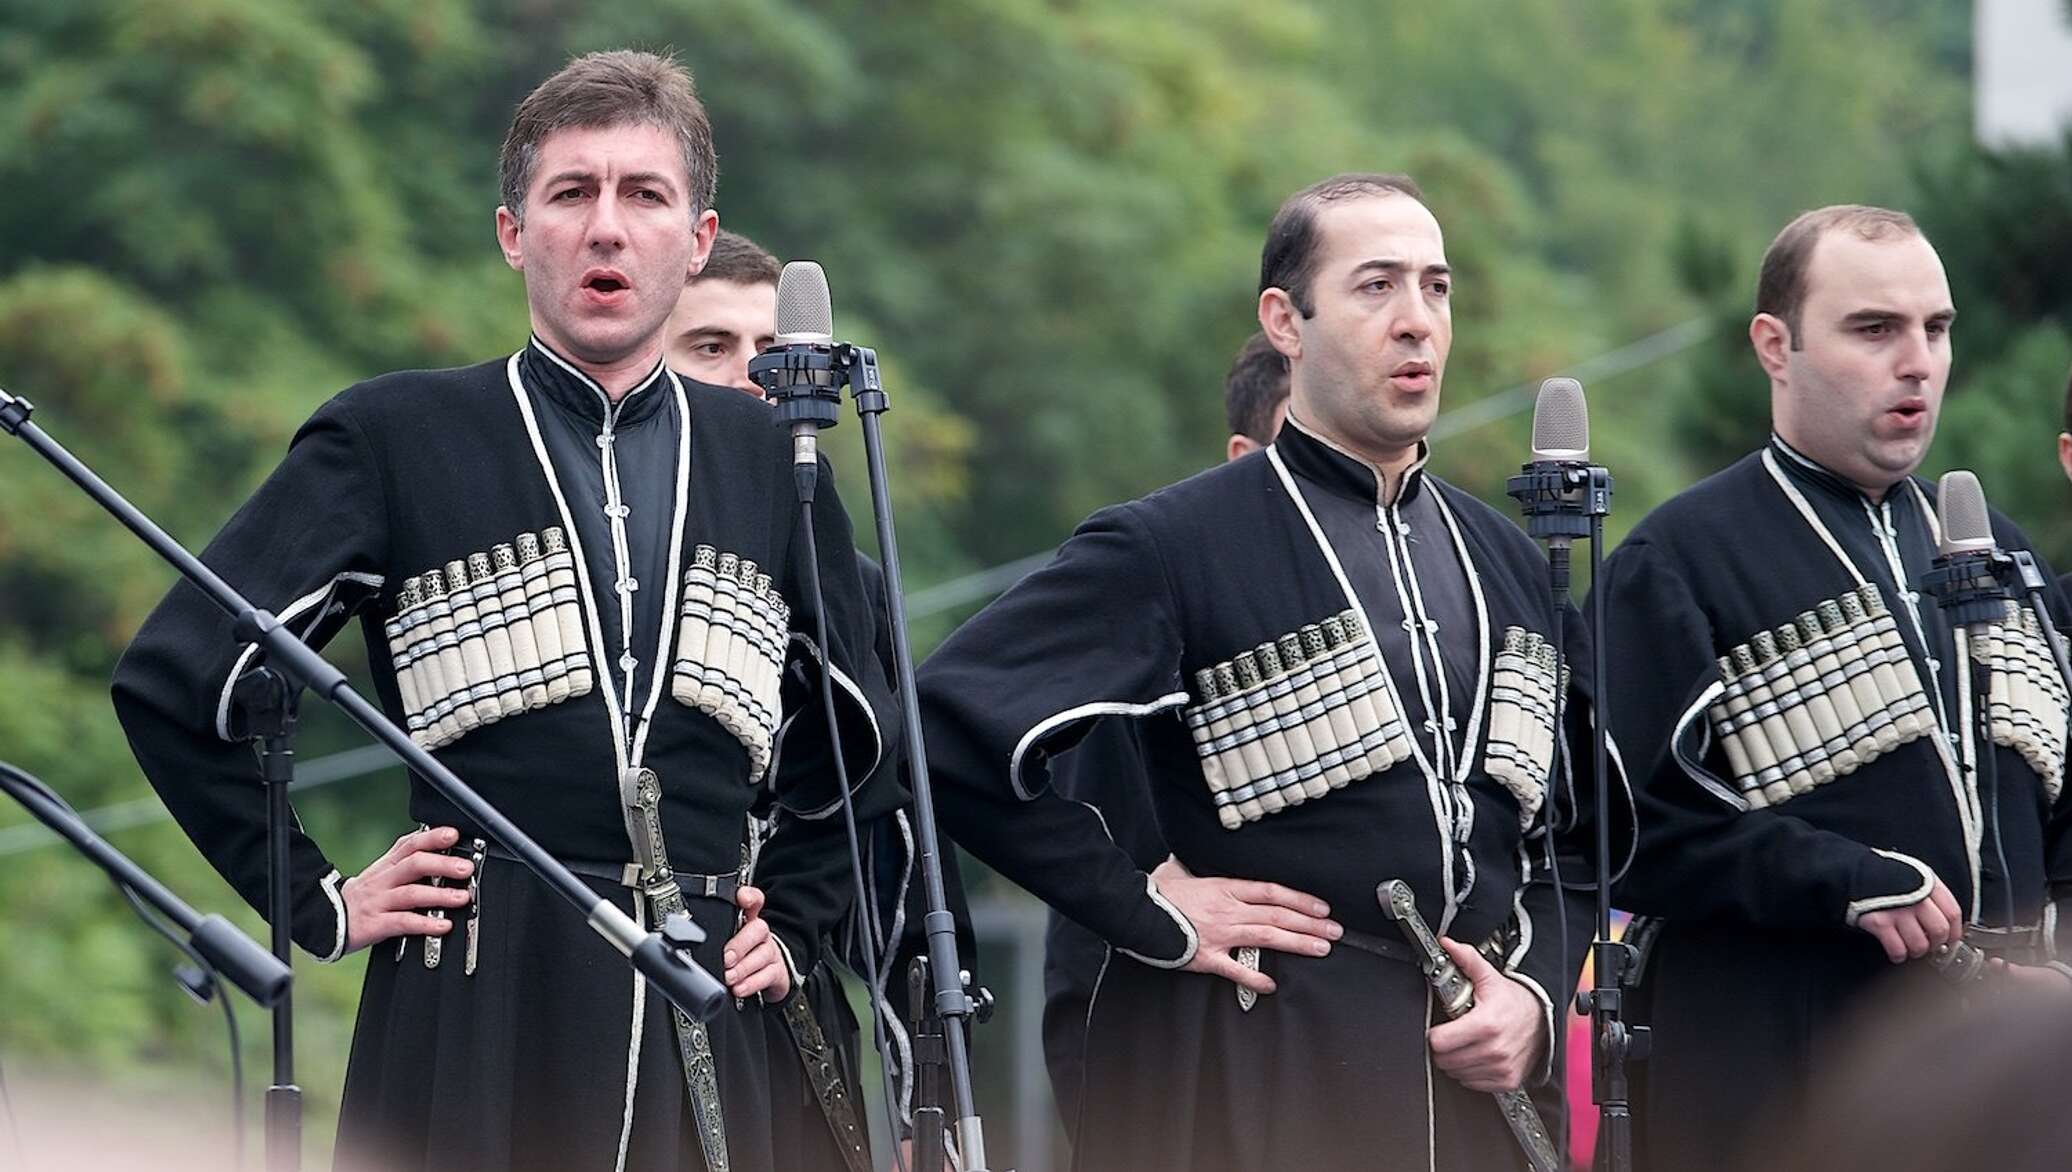 Веселые грузинские песни. Грузины поют. Грузинские музыканты. Музыканты грузины. Грузинский мужской ансамбль.